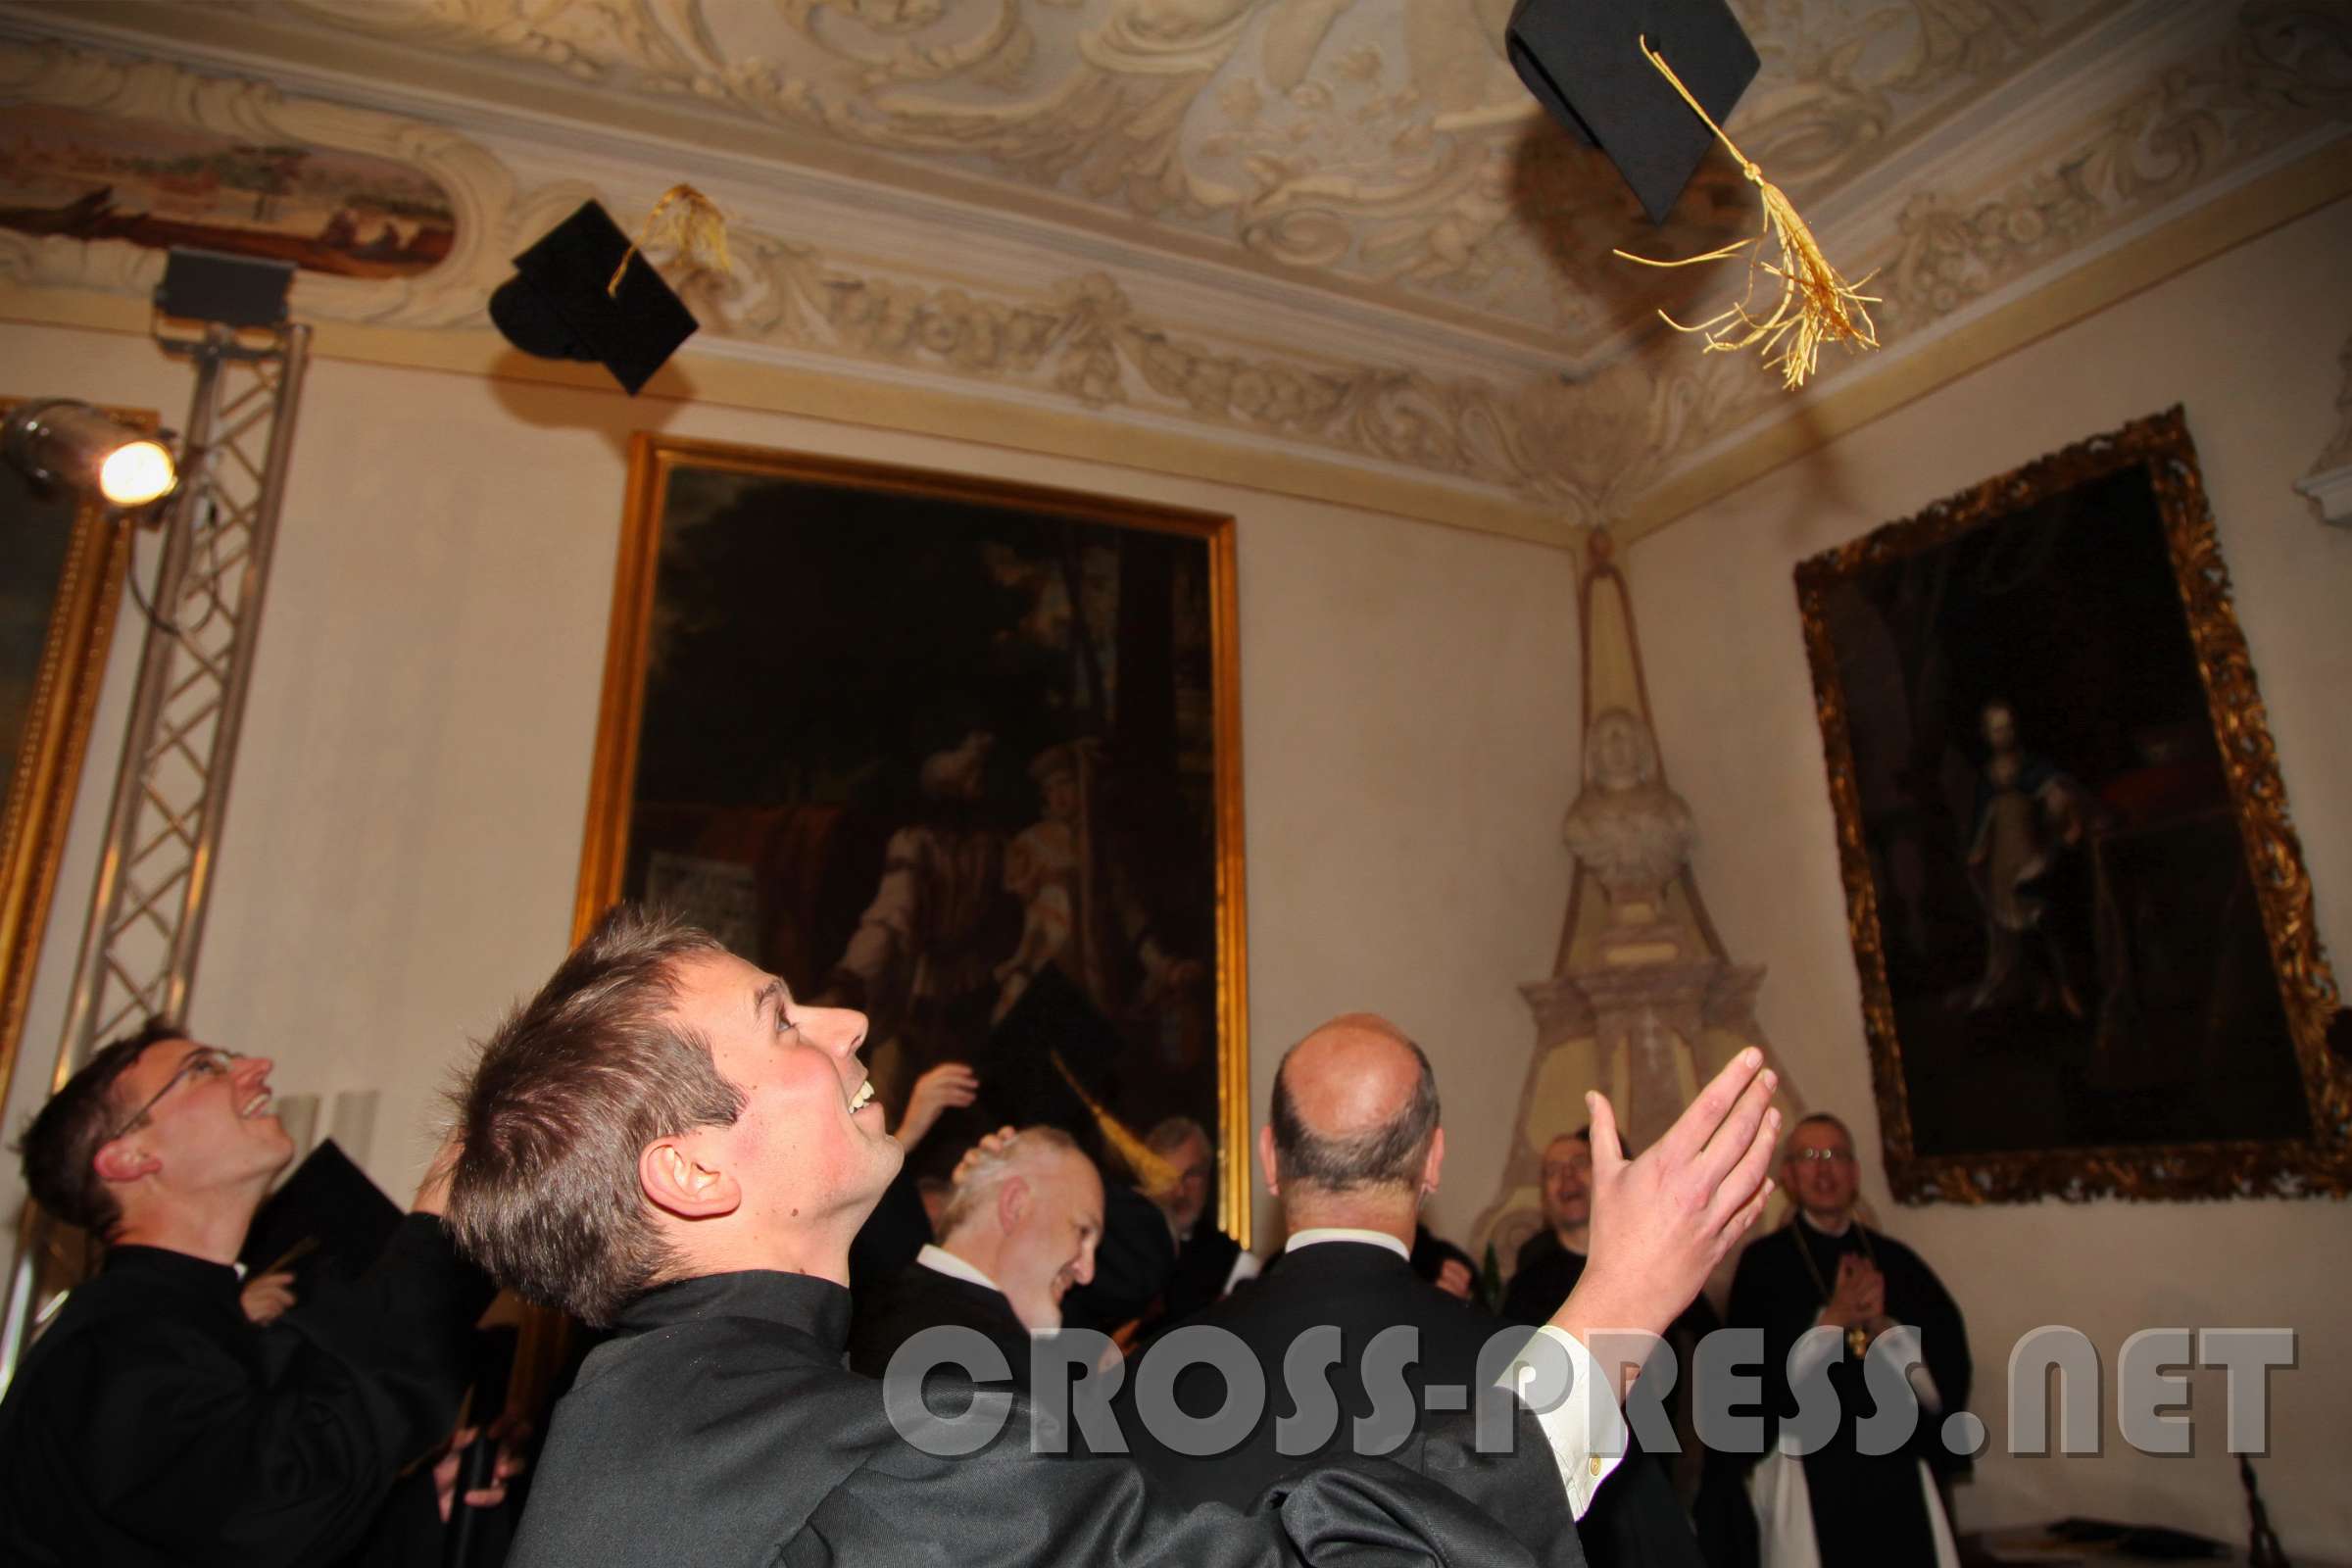 Sponsionsfeier der Phil.-Theol. HS "Benedikt XVI." Nach intonieren der Studentenhymne "Gaudeamus igitur" wurden die Hüte in Luft geworfen. :)